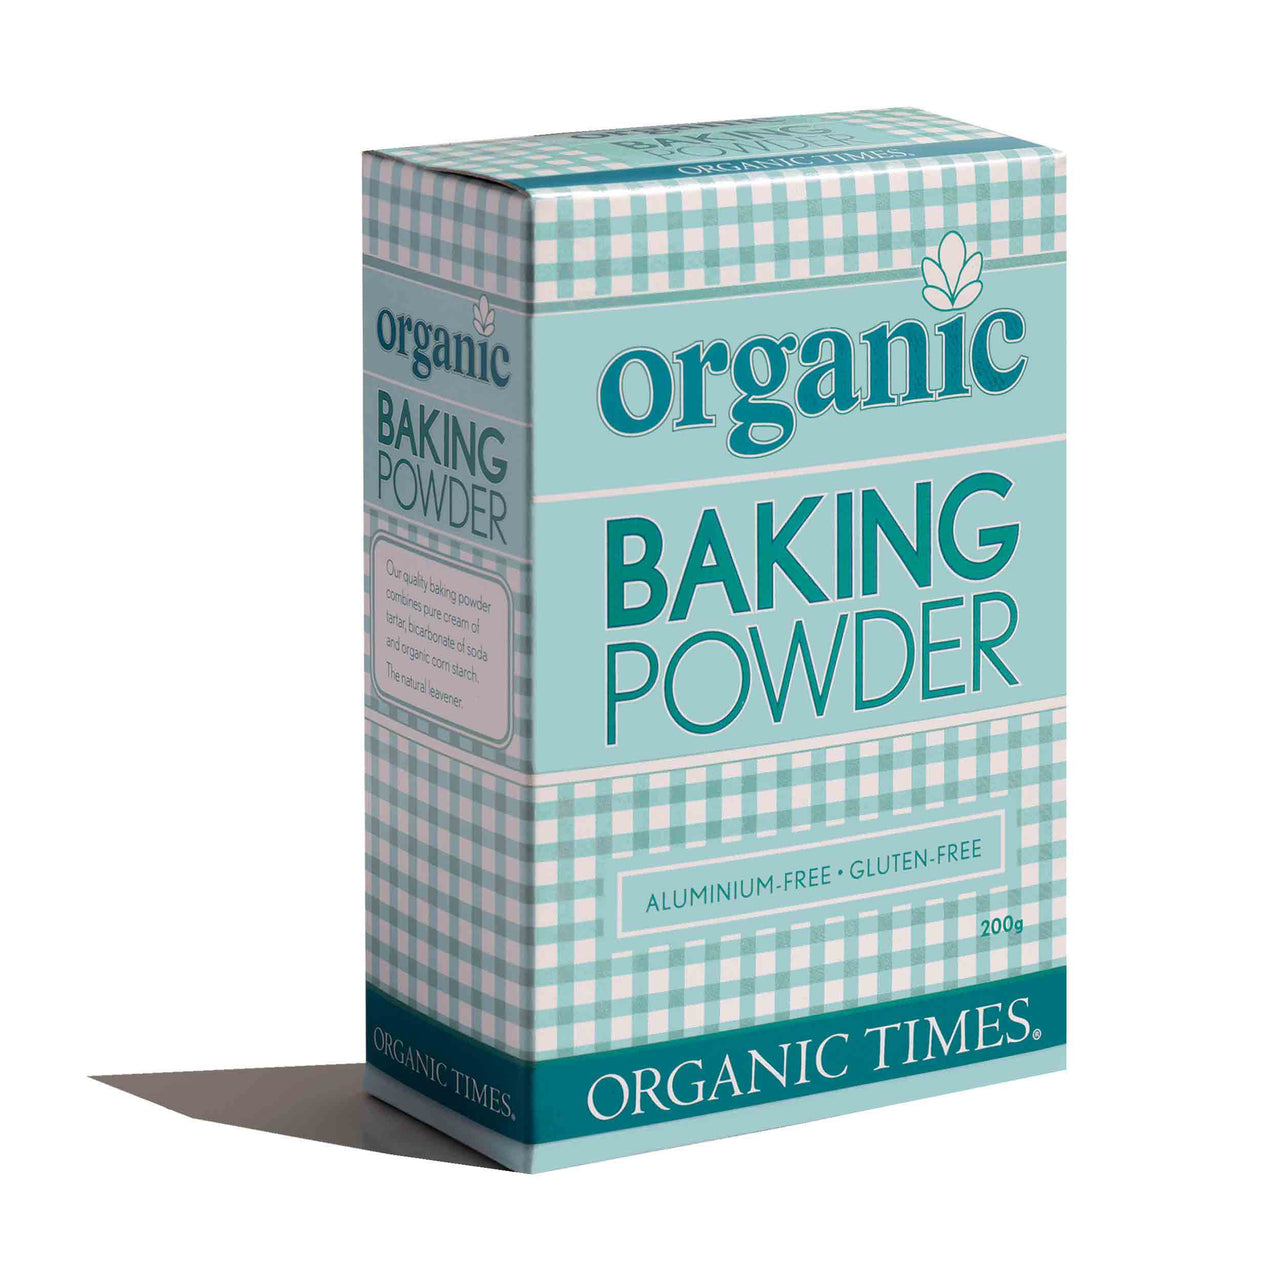 Organic Times - Organic Baking Powder - [200g]